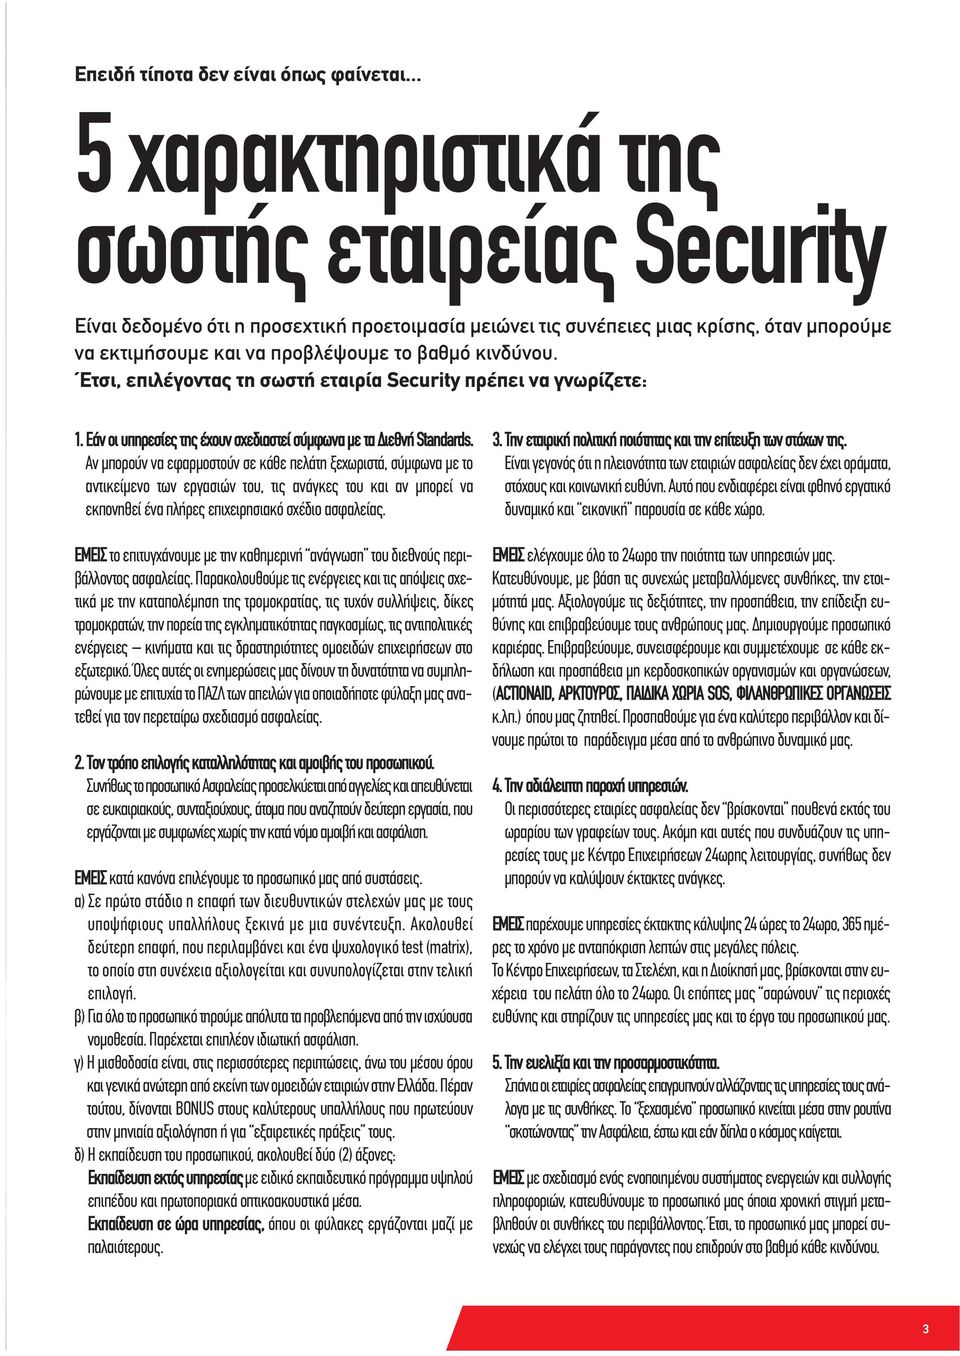 Έτσι, επιλέγοντας τη σωστή εταιρία Security πρέπει να γνωρίζετε: 1. Εάν οι υπηρεσίες της έχουν σχεδιαστεί σύμφωνα με τα Διεθνή Standards.